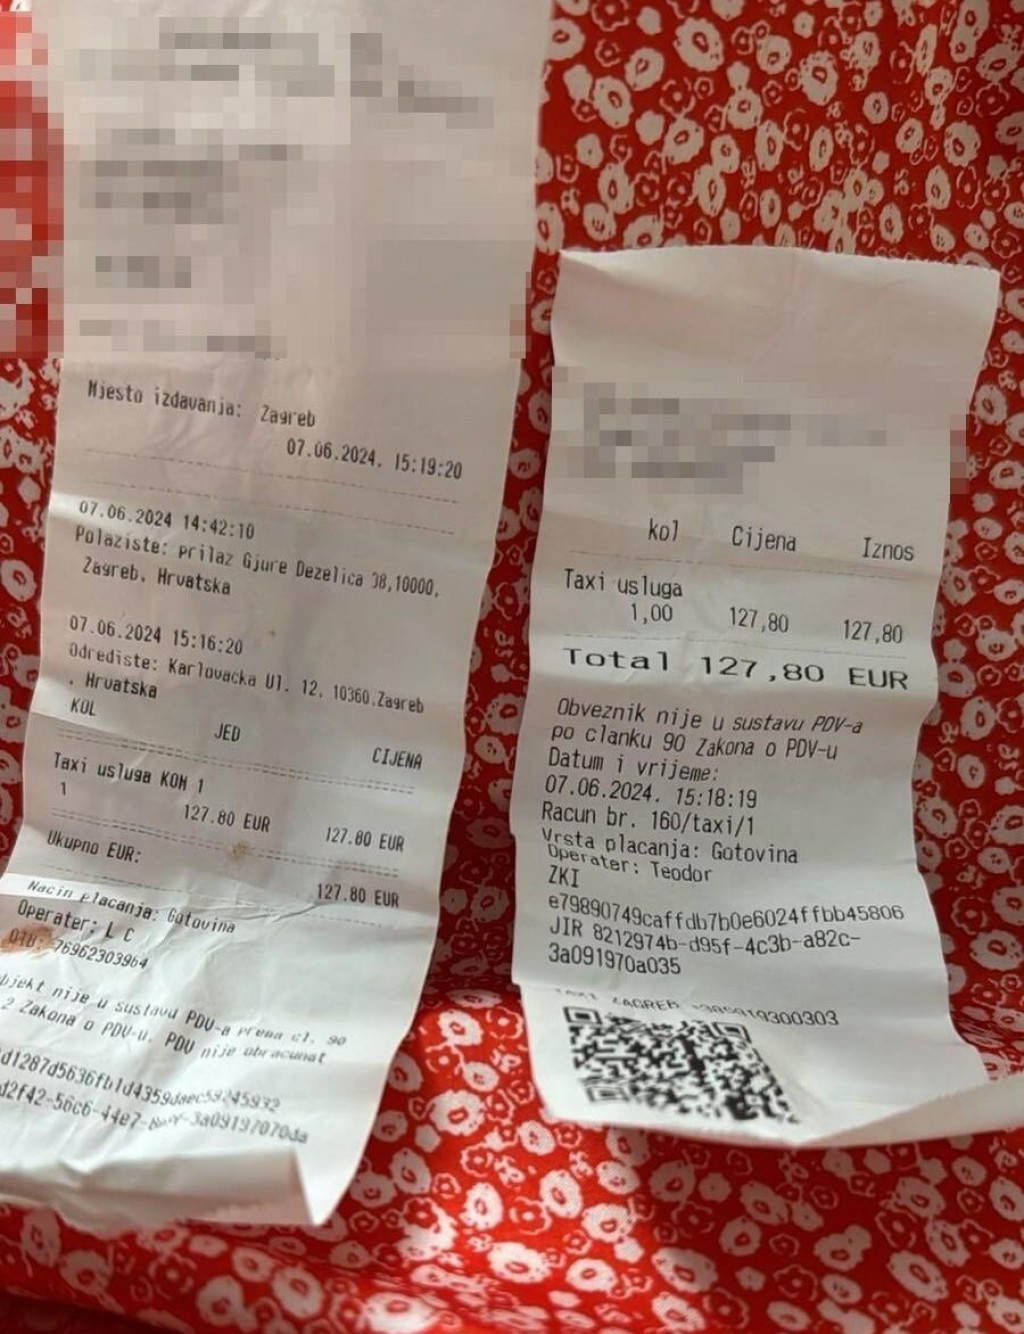 &lt;p&gt;Čovjek iz BiH s obitelji naručio 2 taksija u Zagrebu. Vozili se 13 km, račun je 254 €&lt;/p&gt;